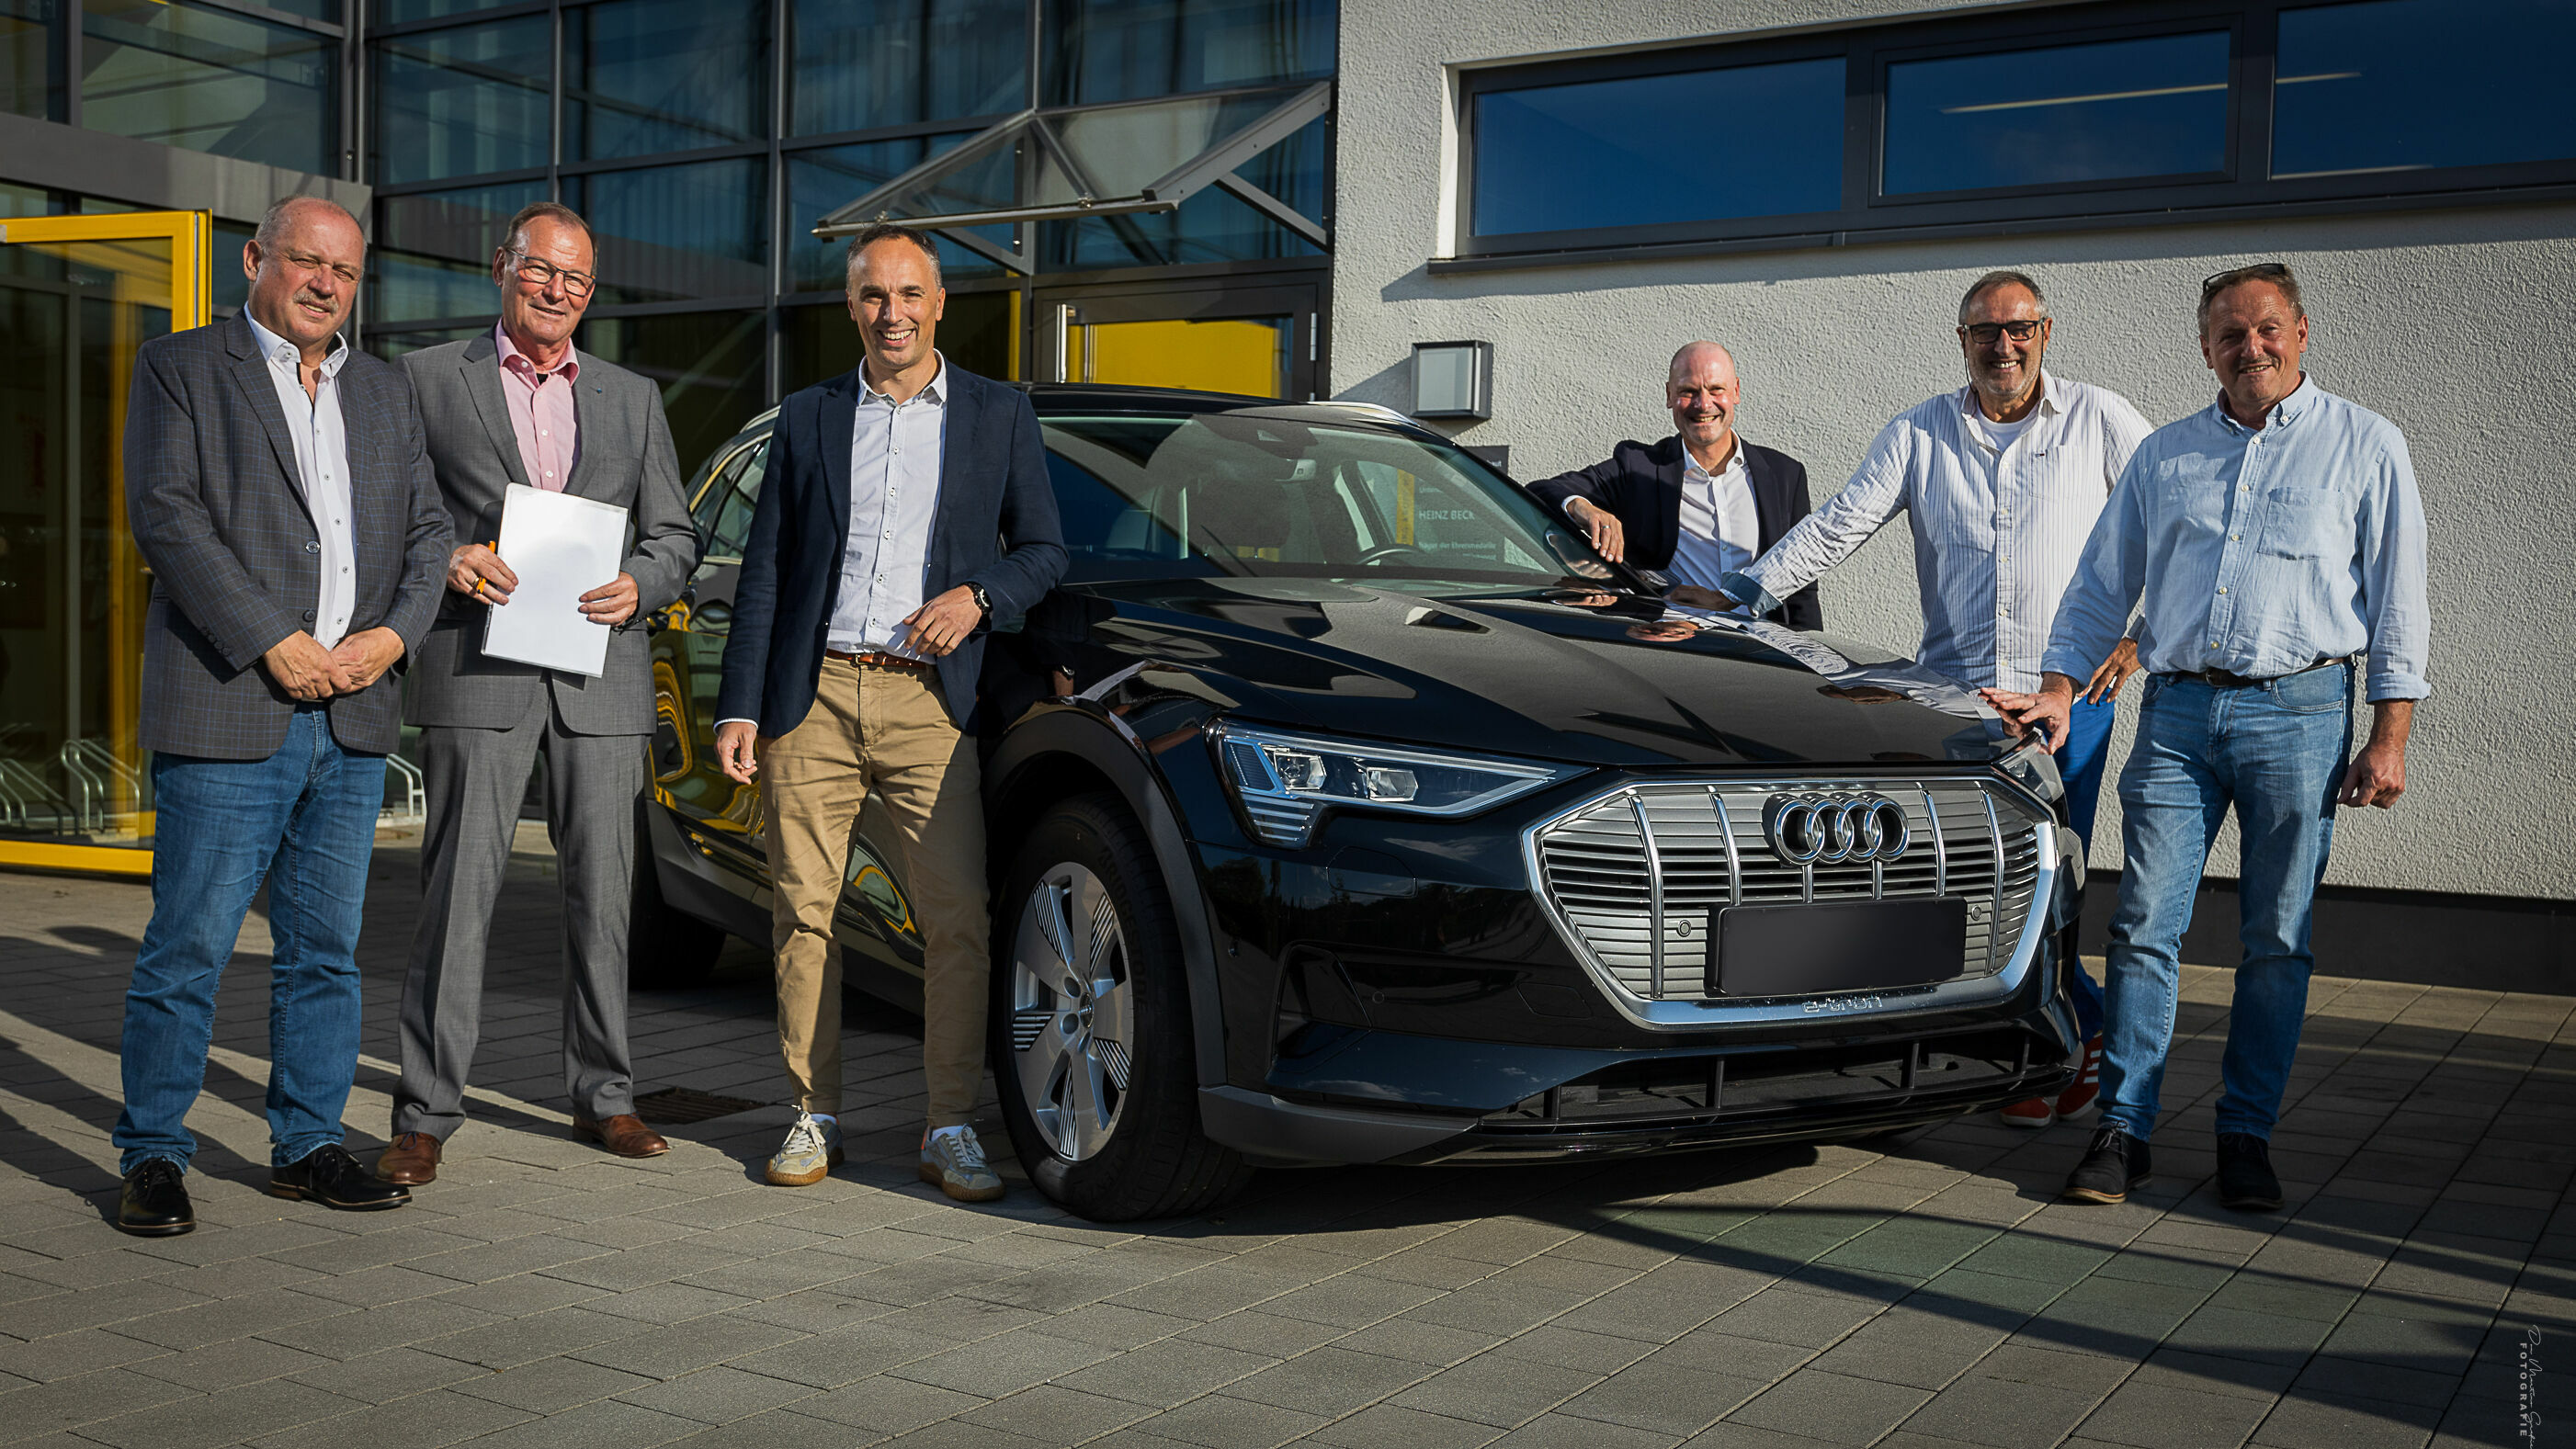 Audi unterstützt E-Carsharing-Projekt im ländlichen Raum